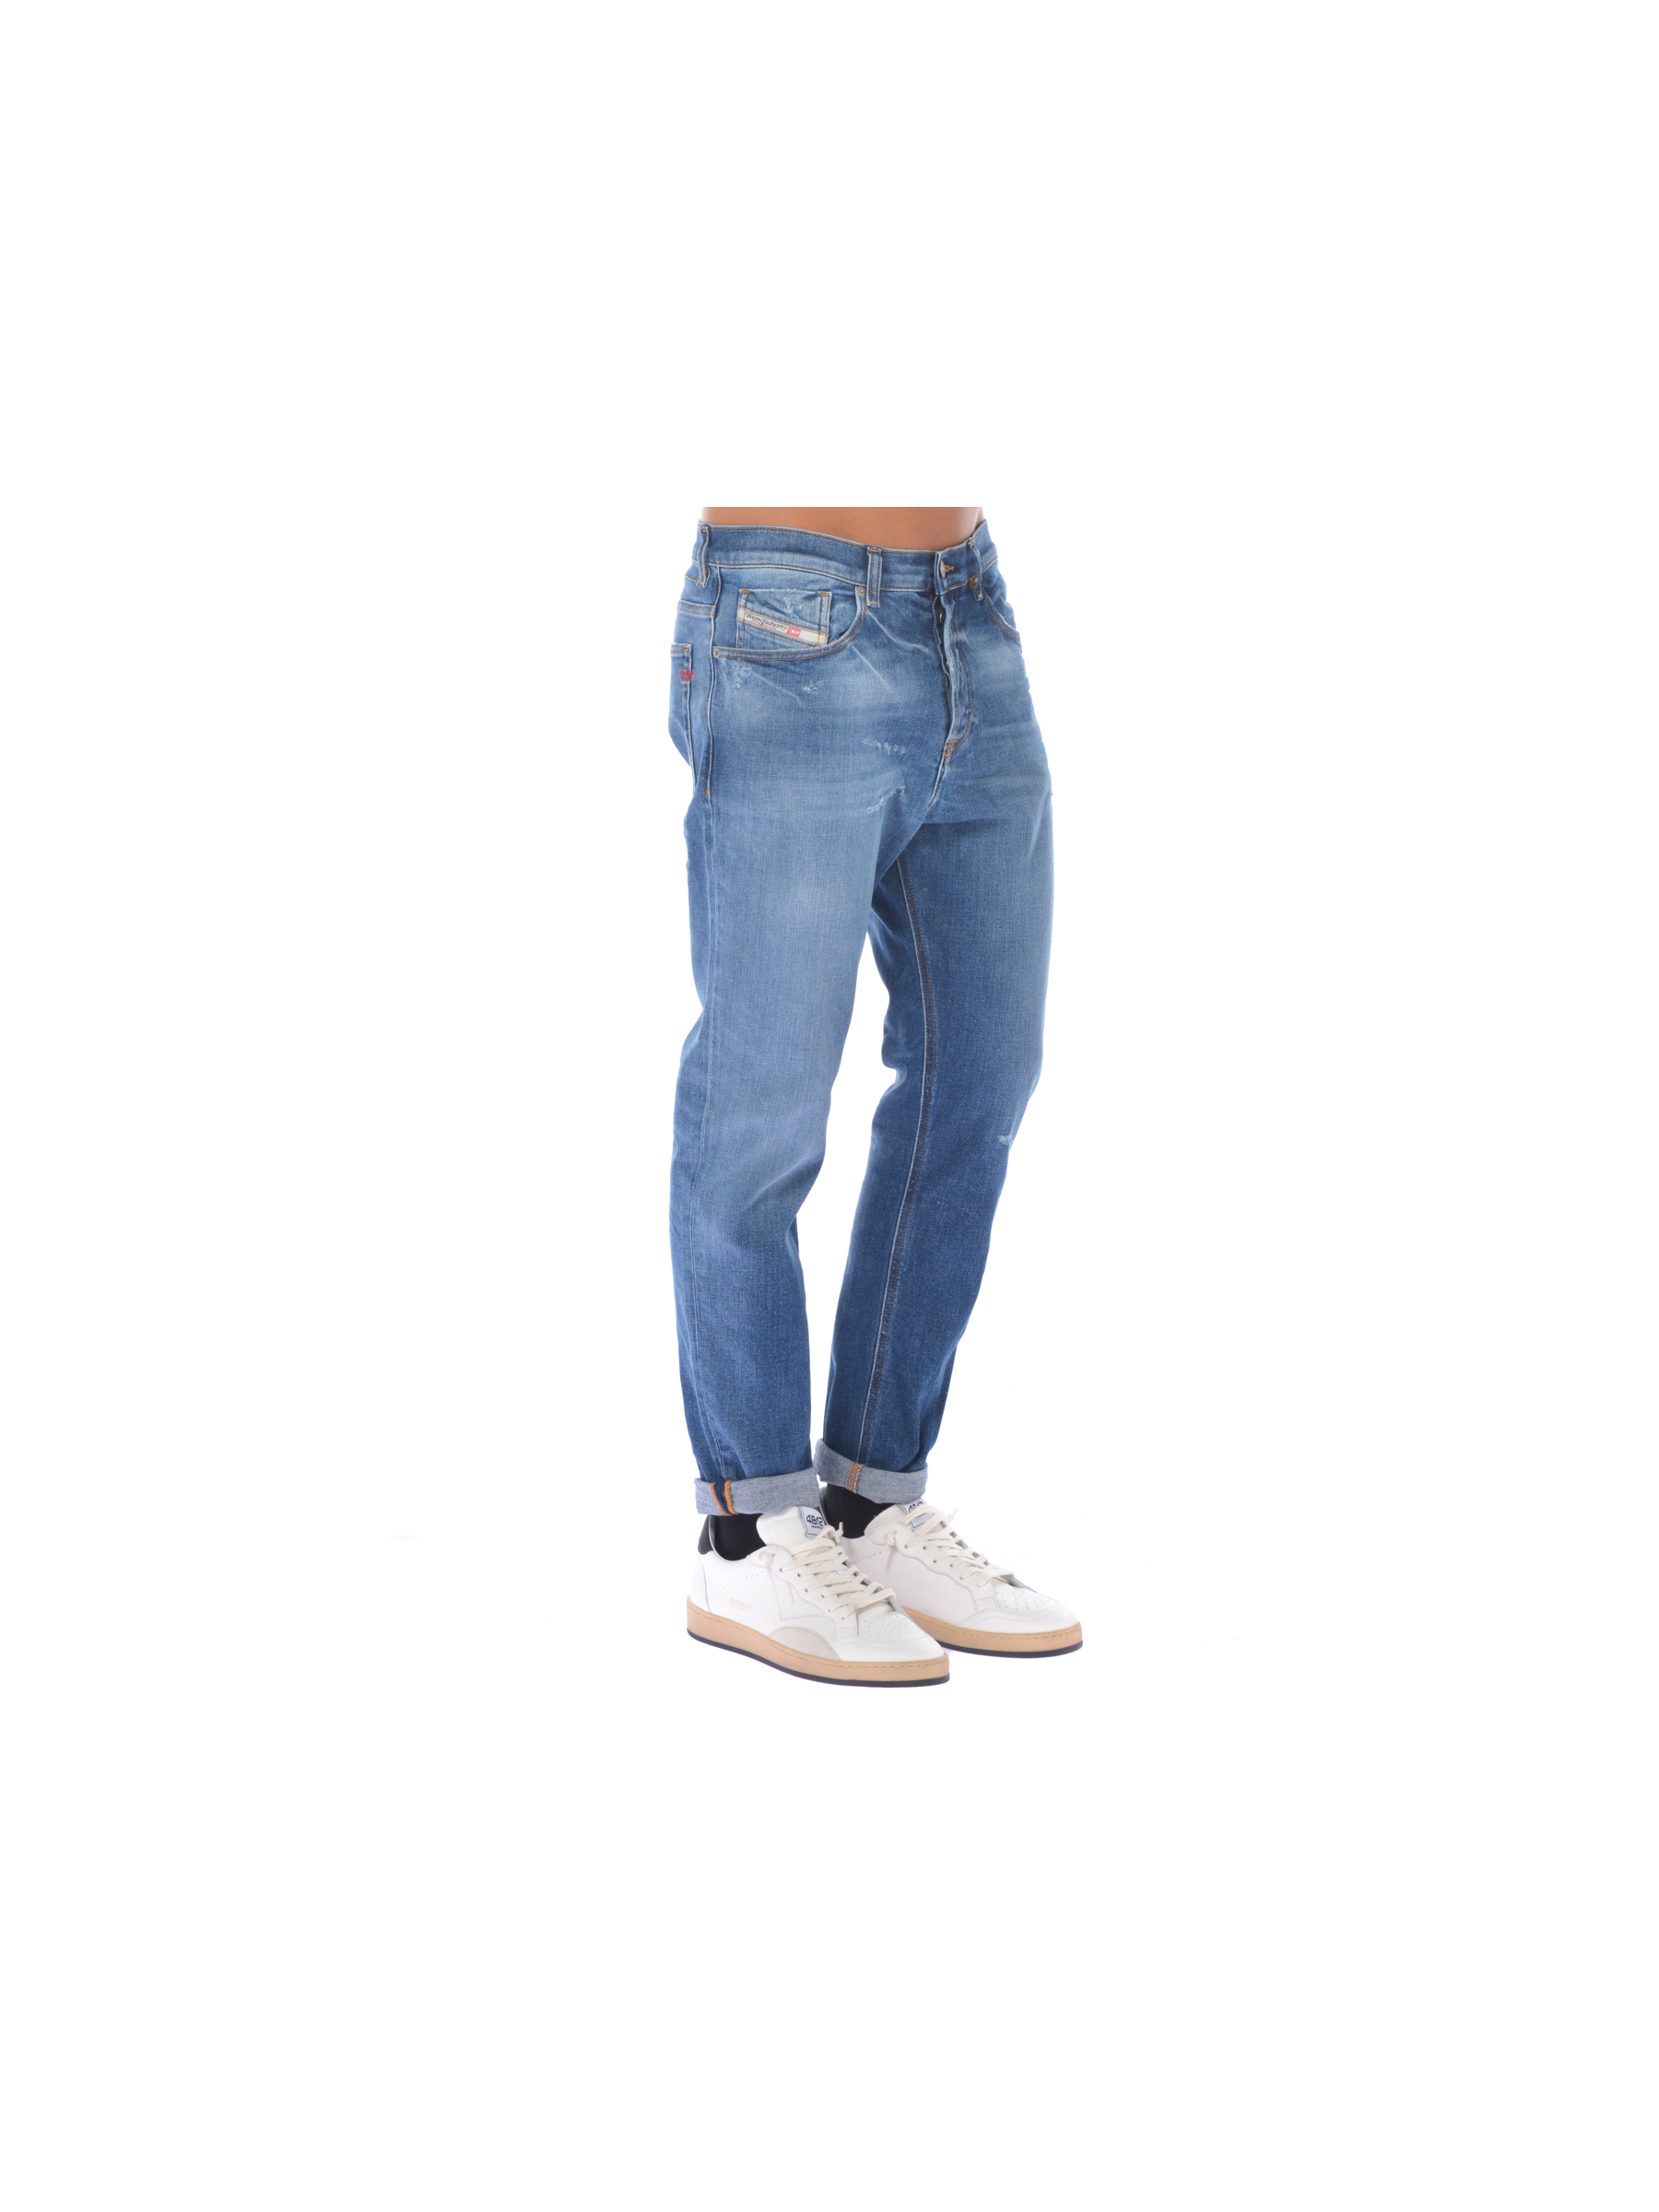 jeans da uomo Diesel cinque tasche con rotture